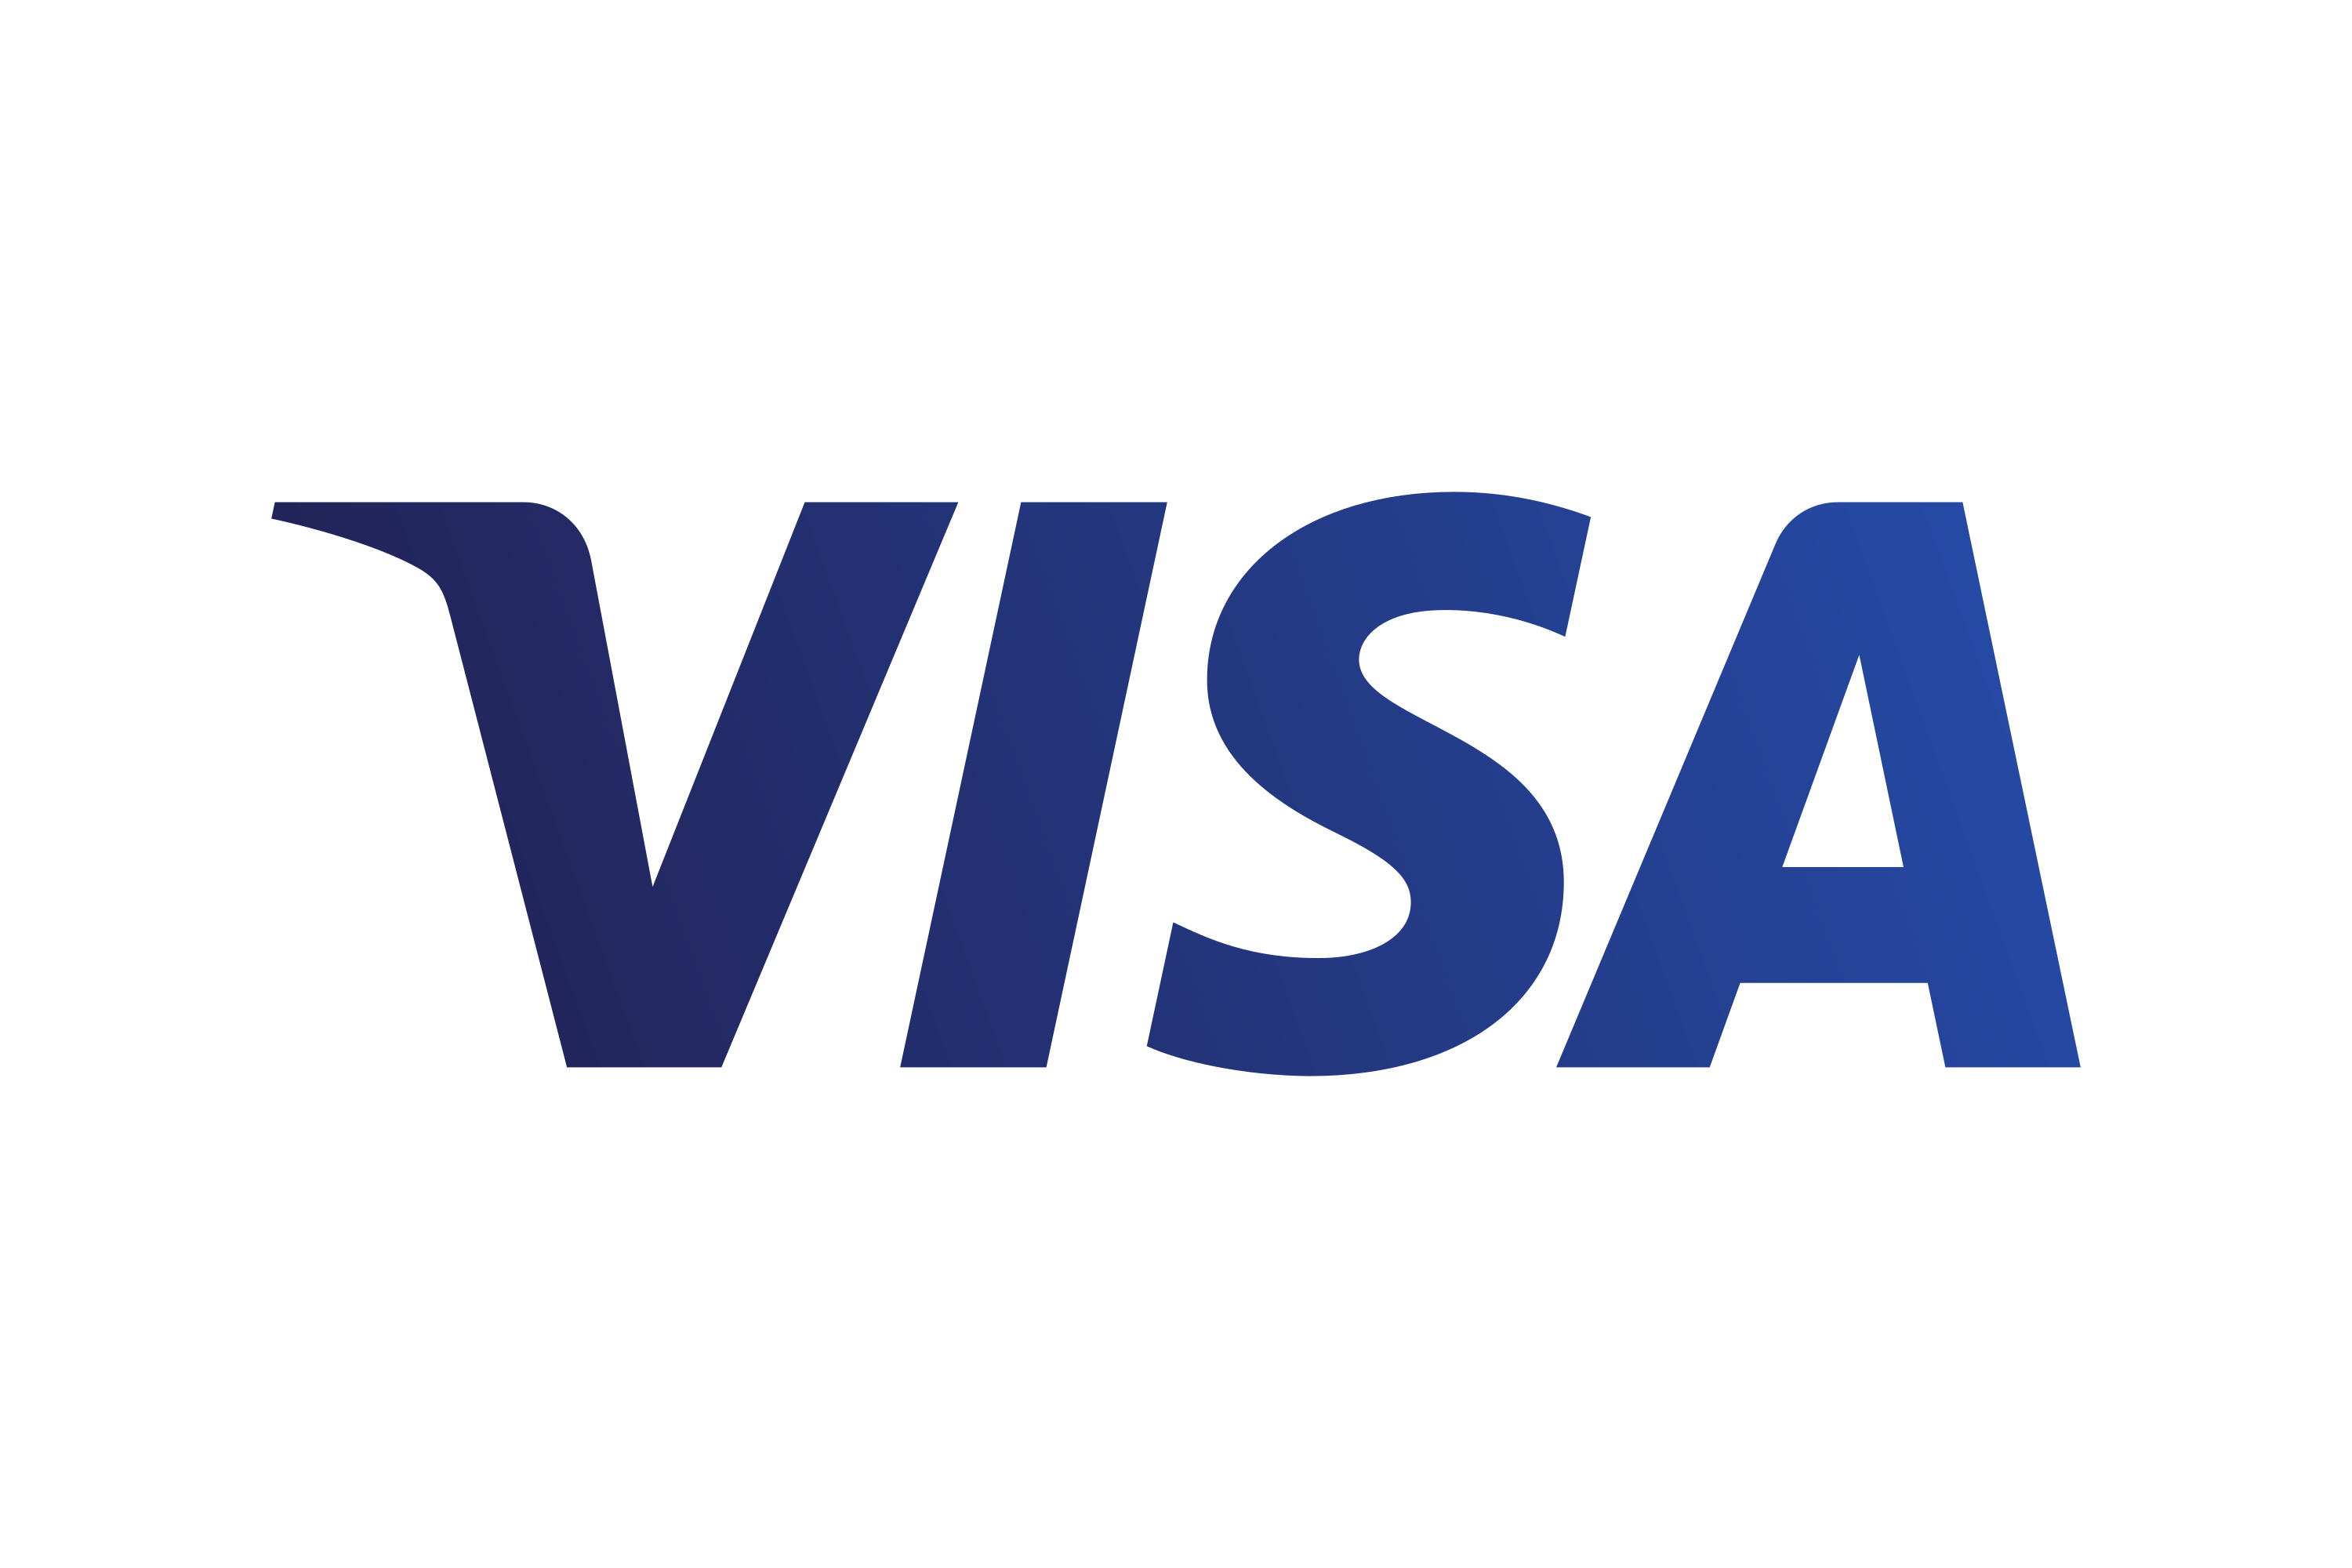 Download Visa Inc. Logo in SVG Vector or PNG File Format Logo.wine